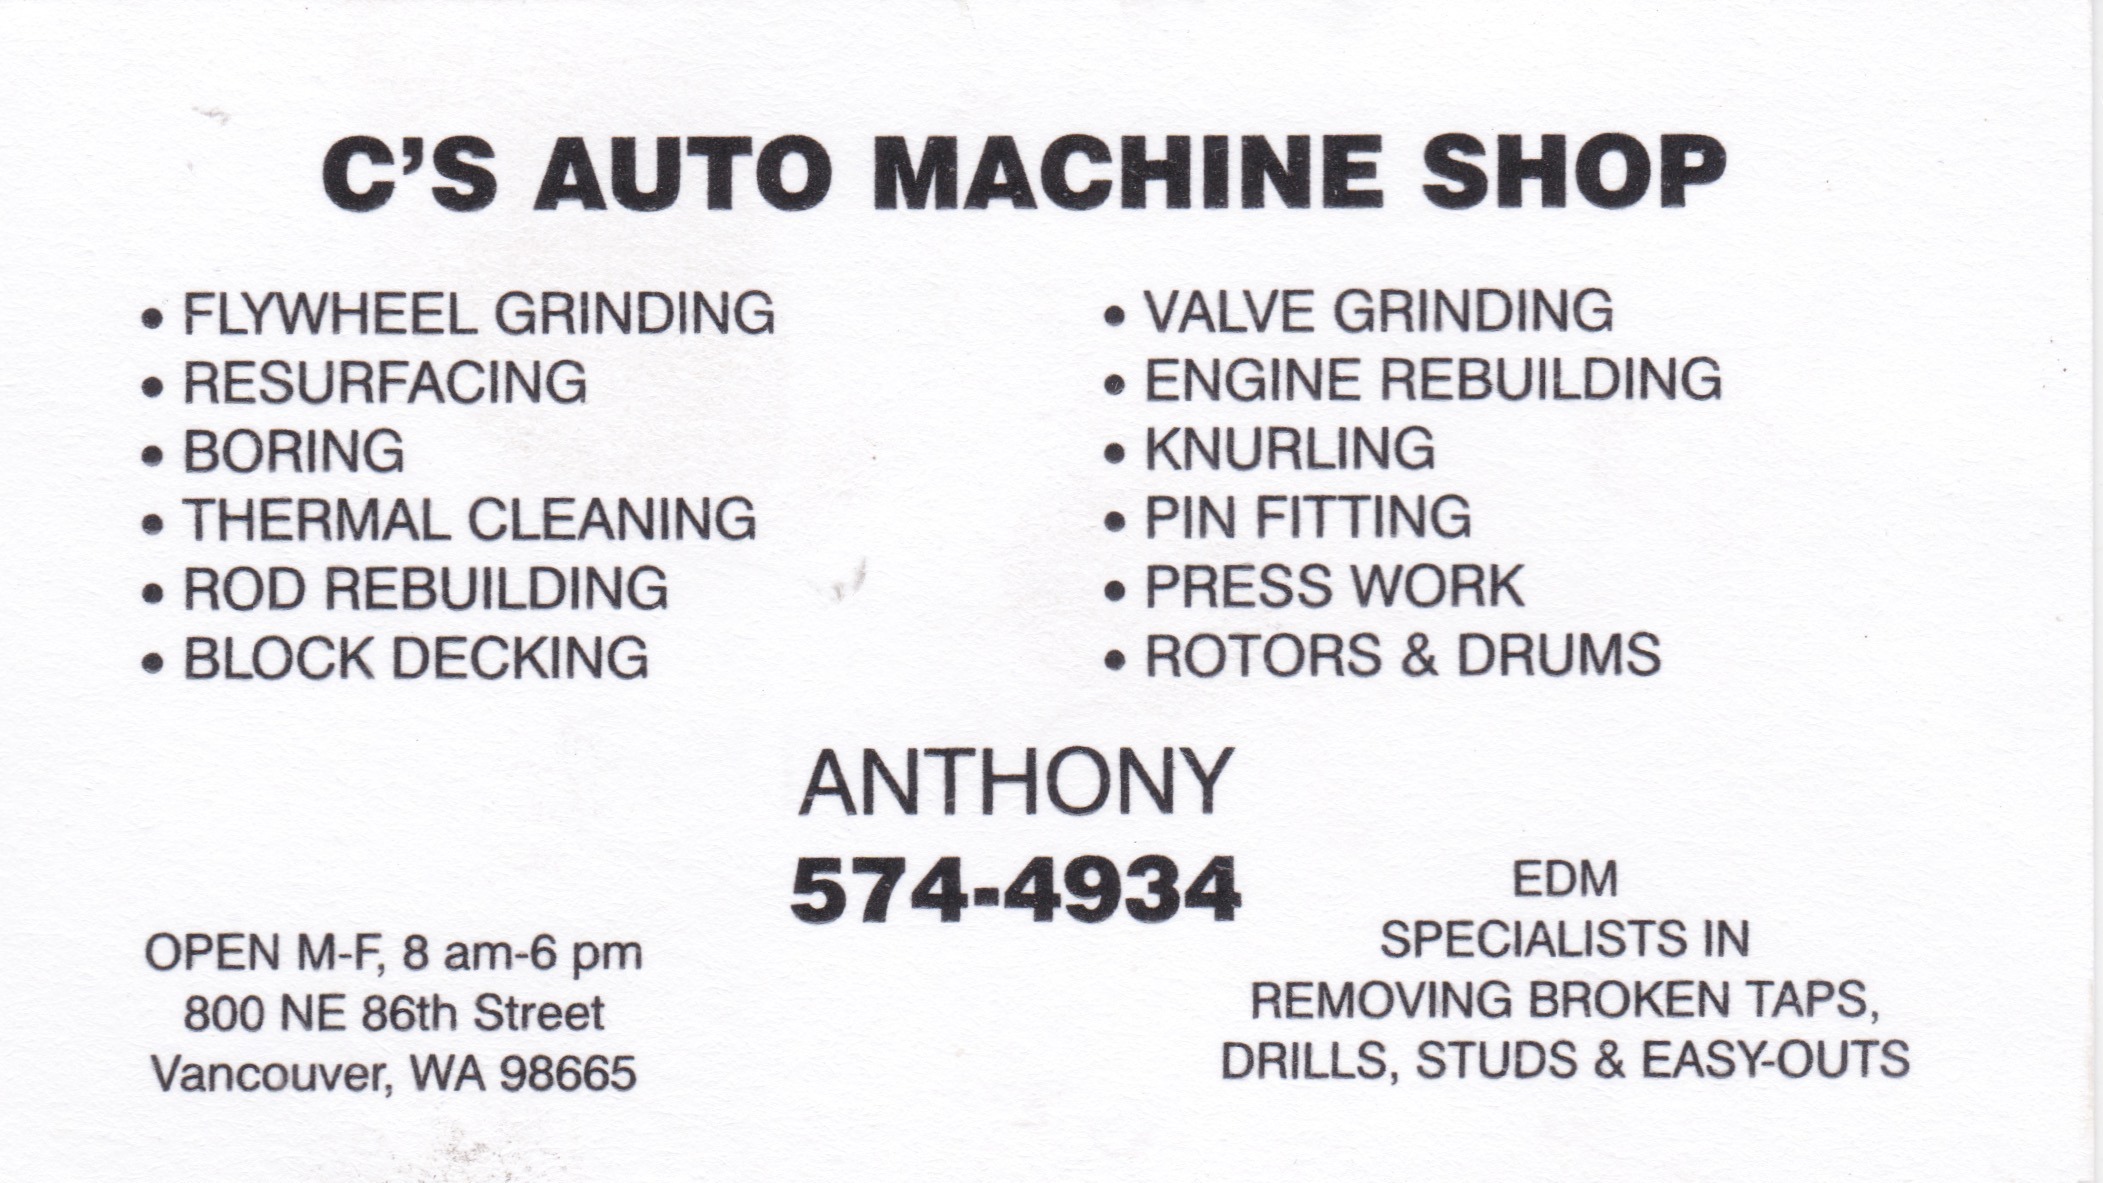 C's Auto Machine Shop business card, sponsor